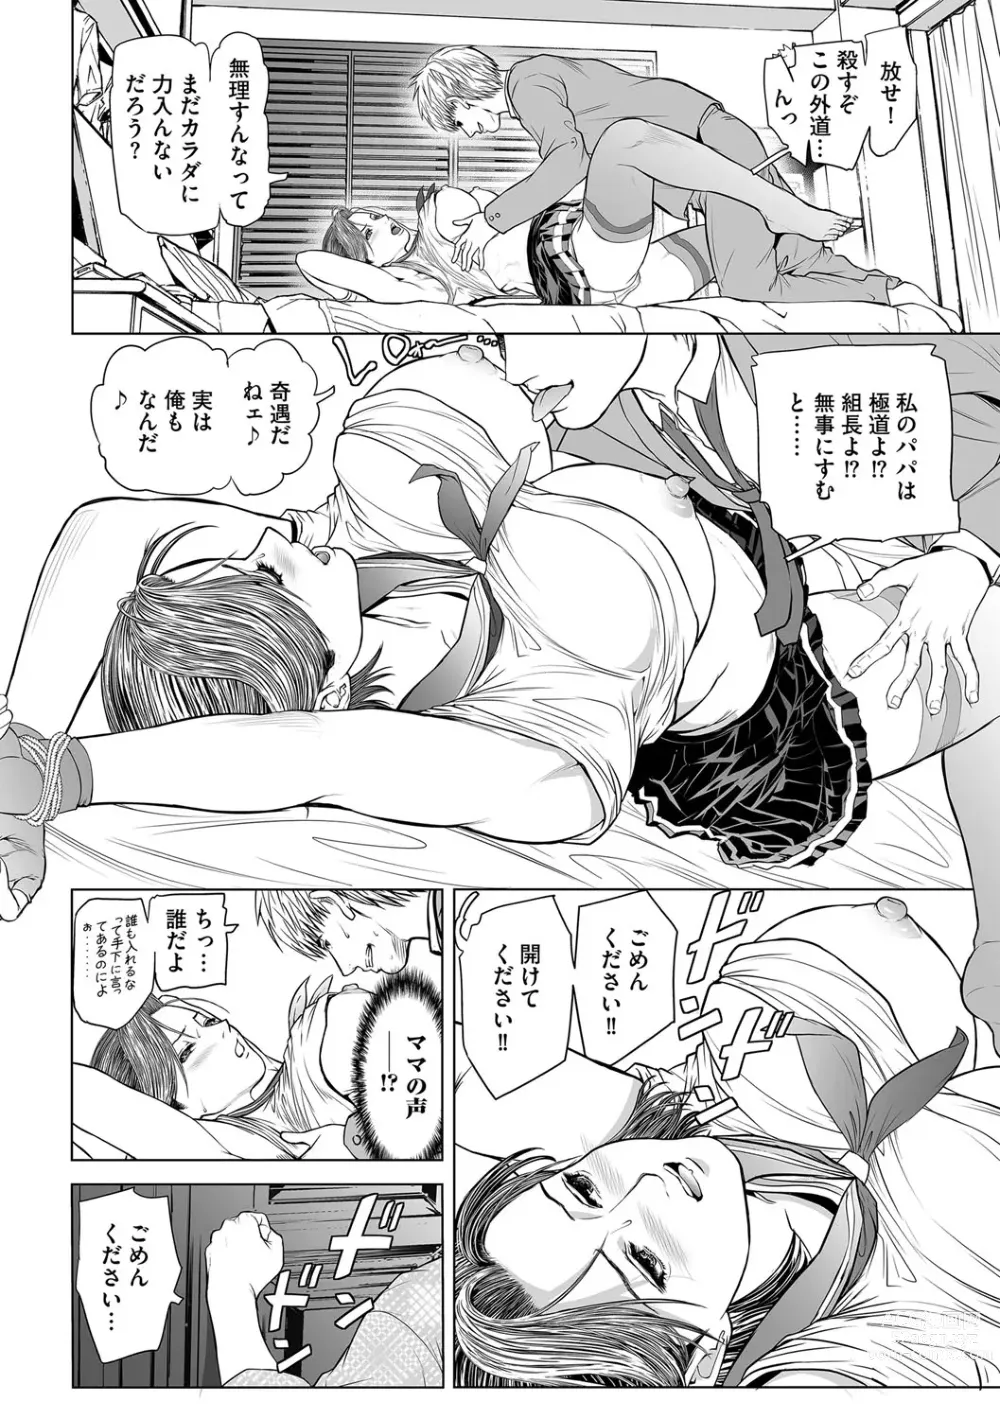 Page 9 of manga INGA Ch. 2